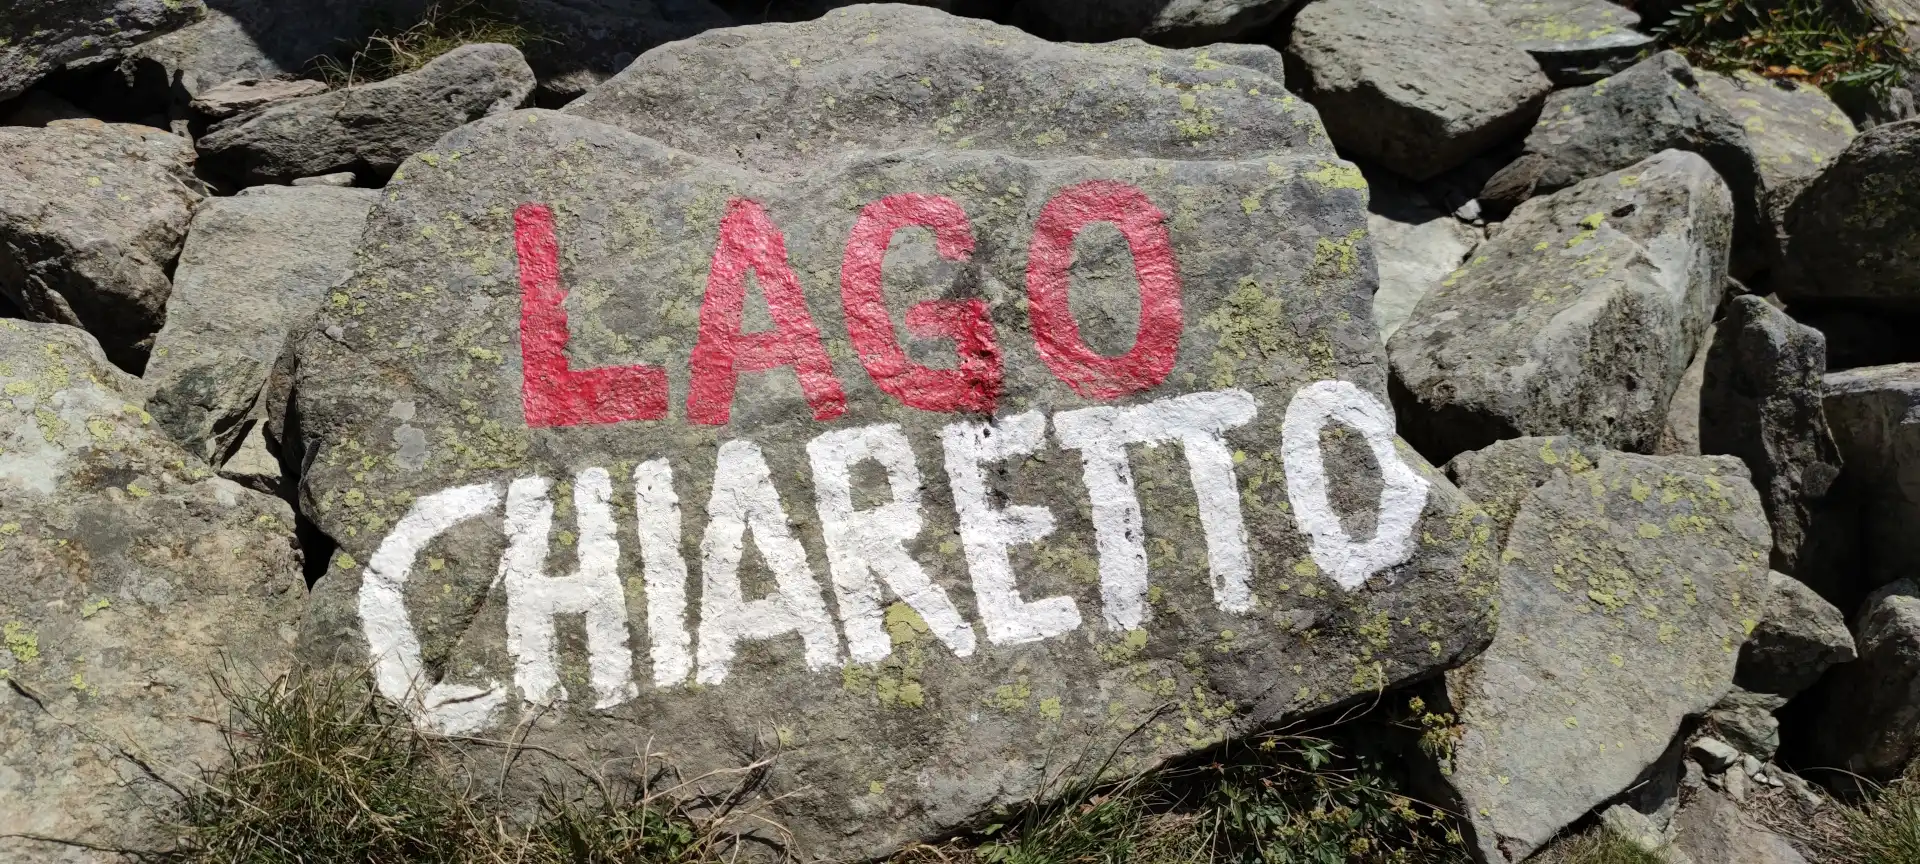 VLog - Estate 2021 - Giro dei Laghi del Monviso - Parte 2 - Lago Chiaretto